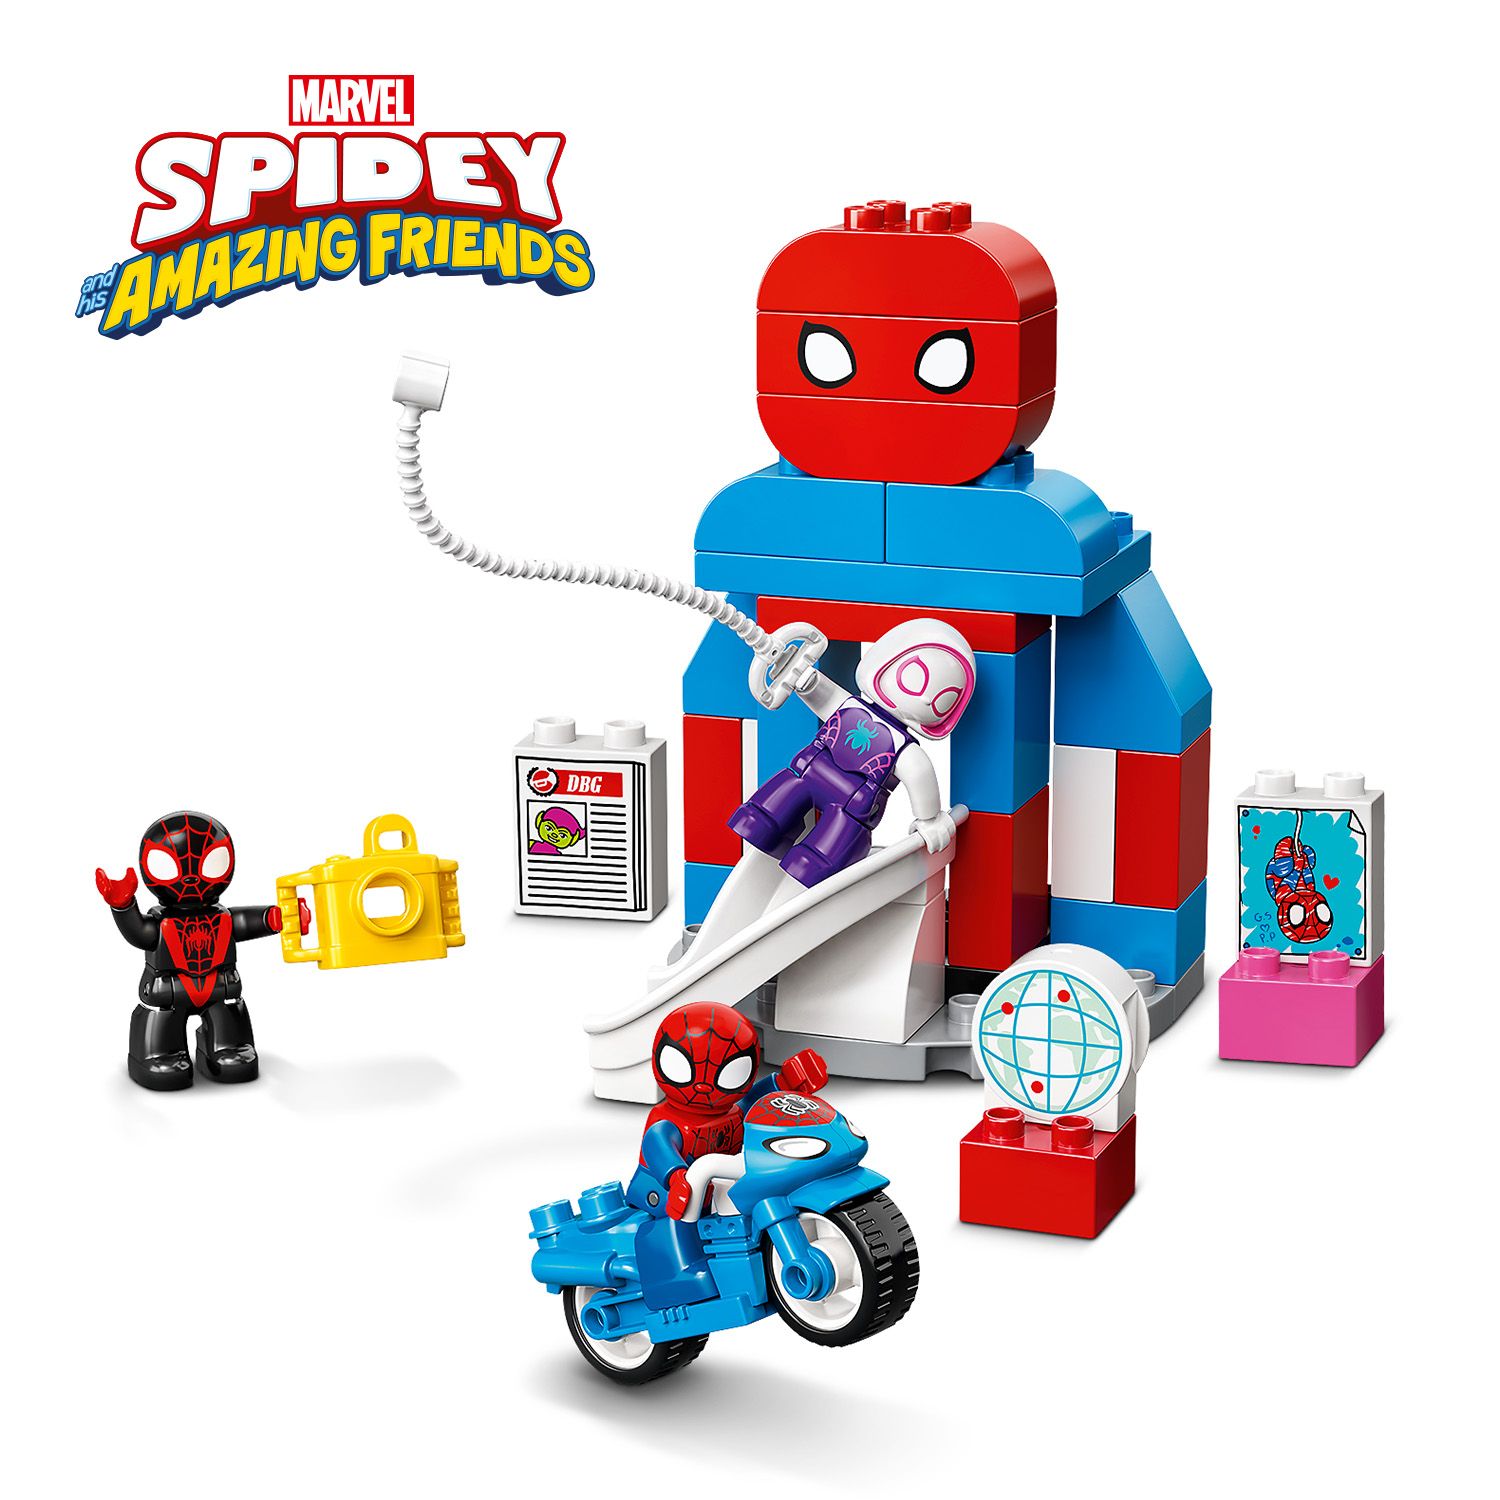 Toddler-friendly Spider-Man playset